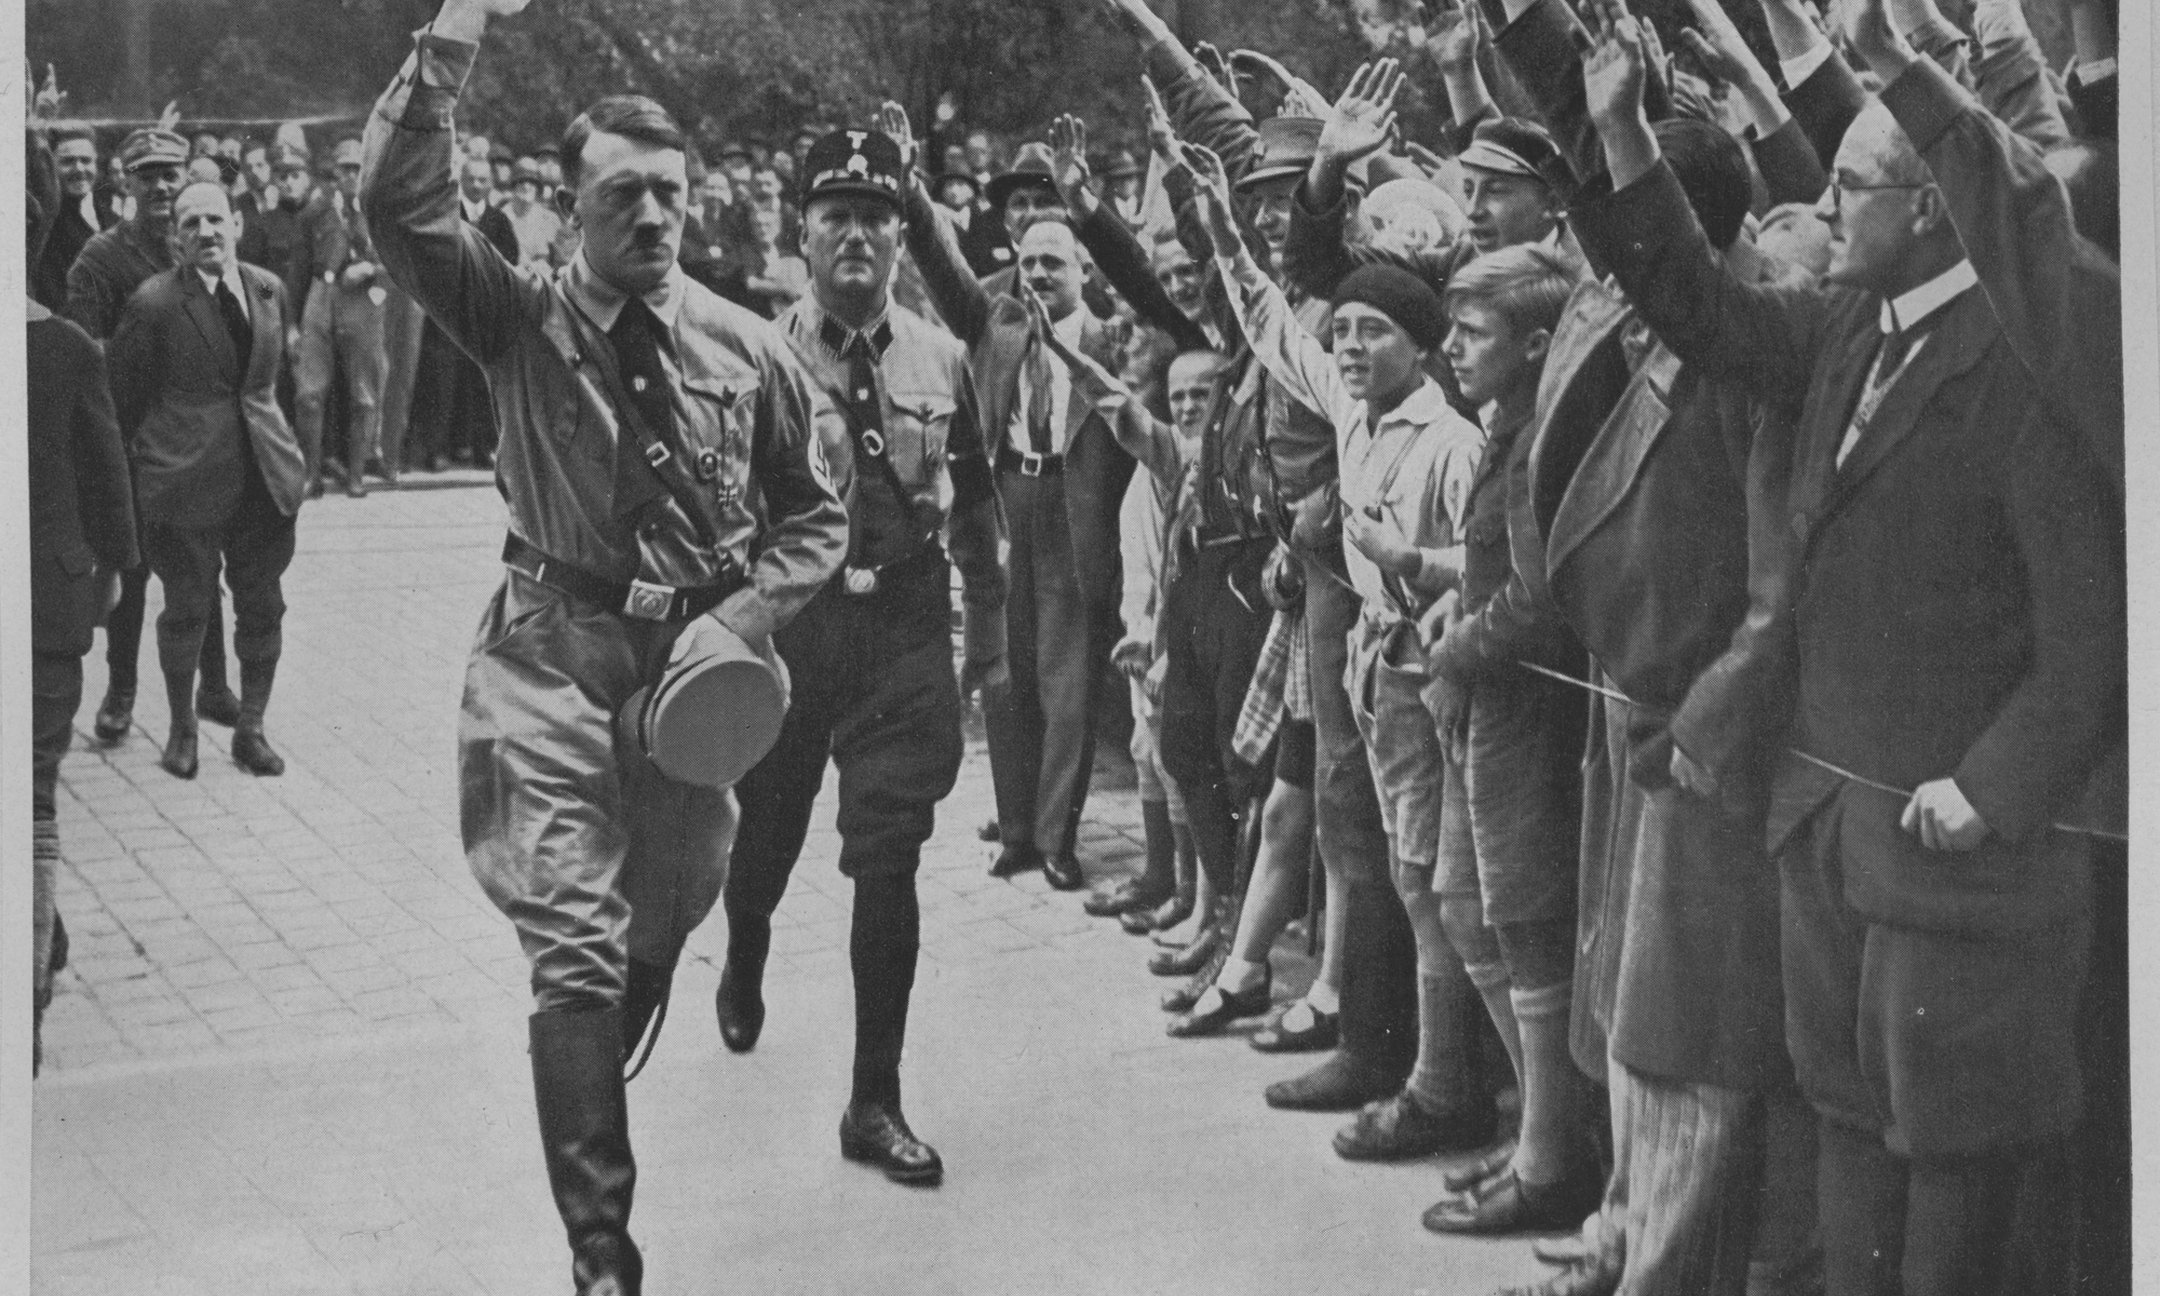 Aanhangers van Adolf Hitler begroeten hem tijdens een partijdag in Neurenberg (1929). Deze en andere foto's van Hitler kreeg je bij aankoop van sigaretten en werden in speciale verzamelalbums geplakt. Deze foto komt uit de serie Deutschland erwacht (Duitsland ontwaakt).